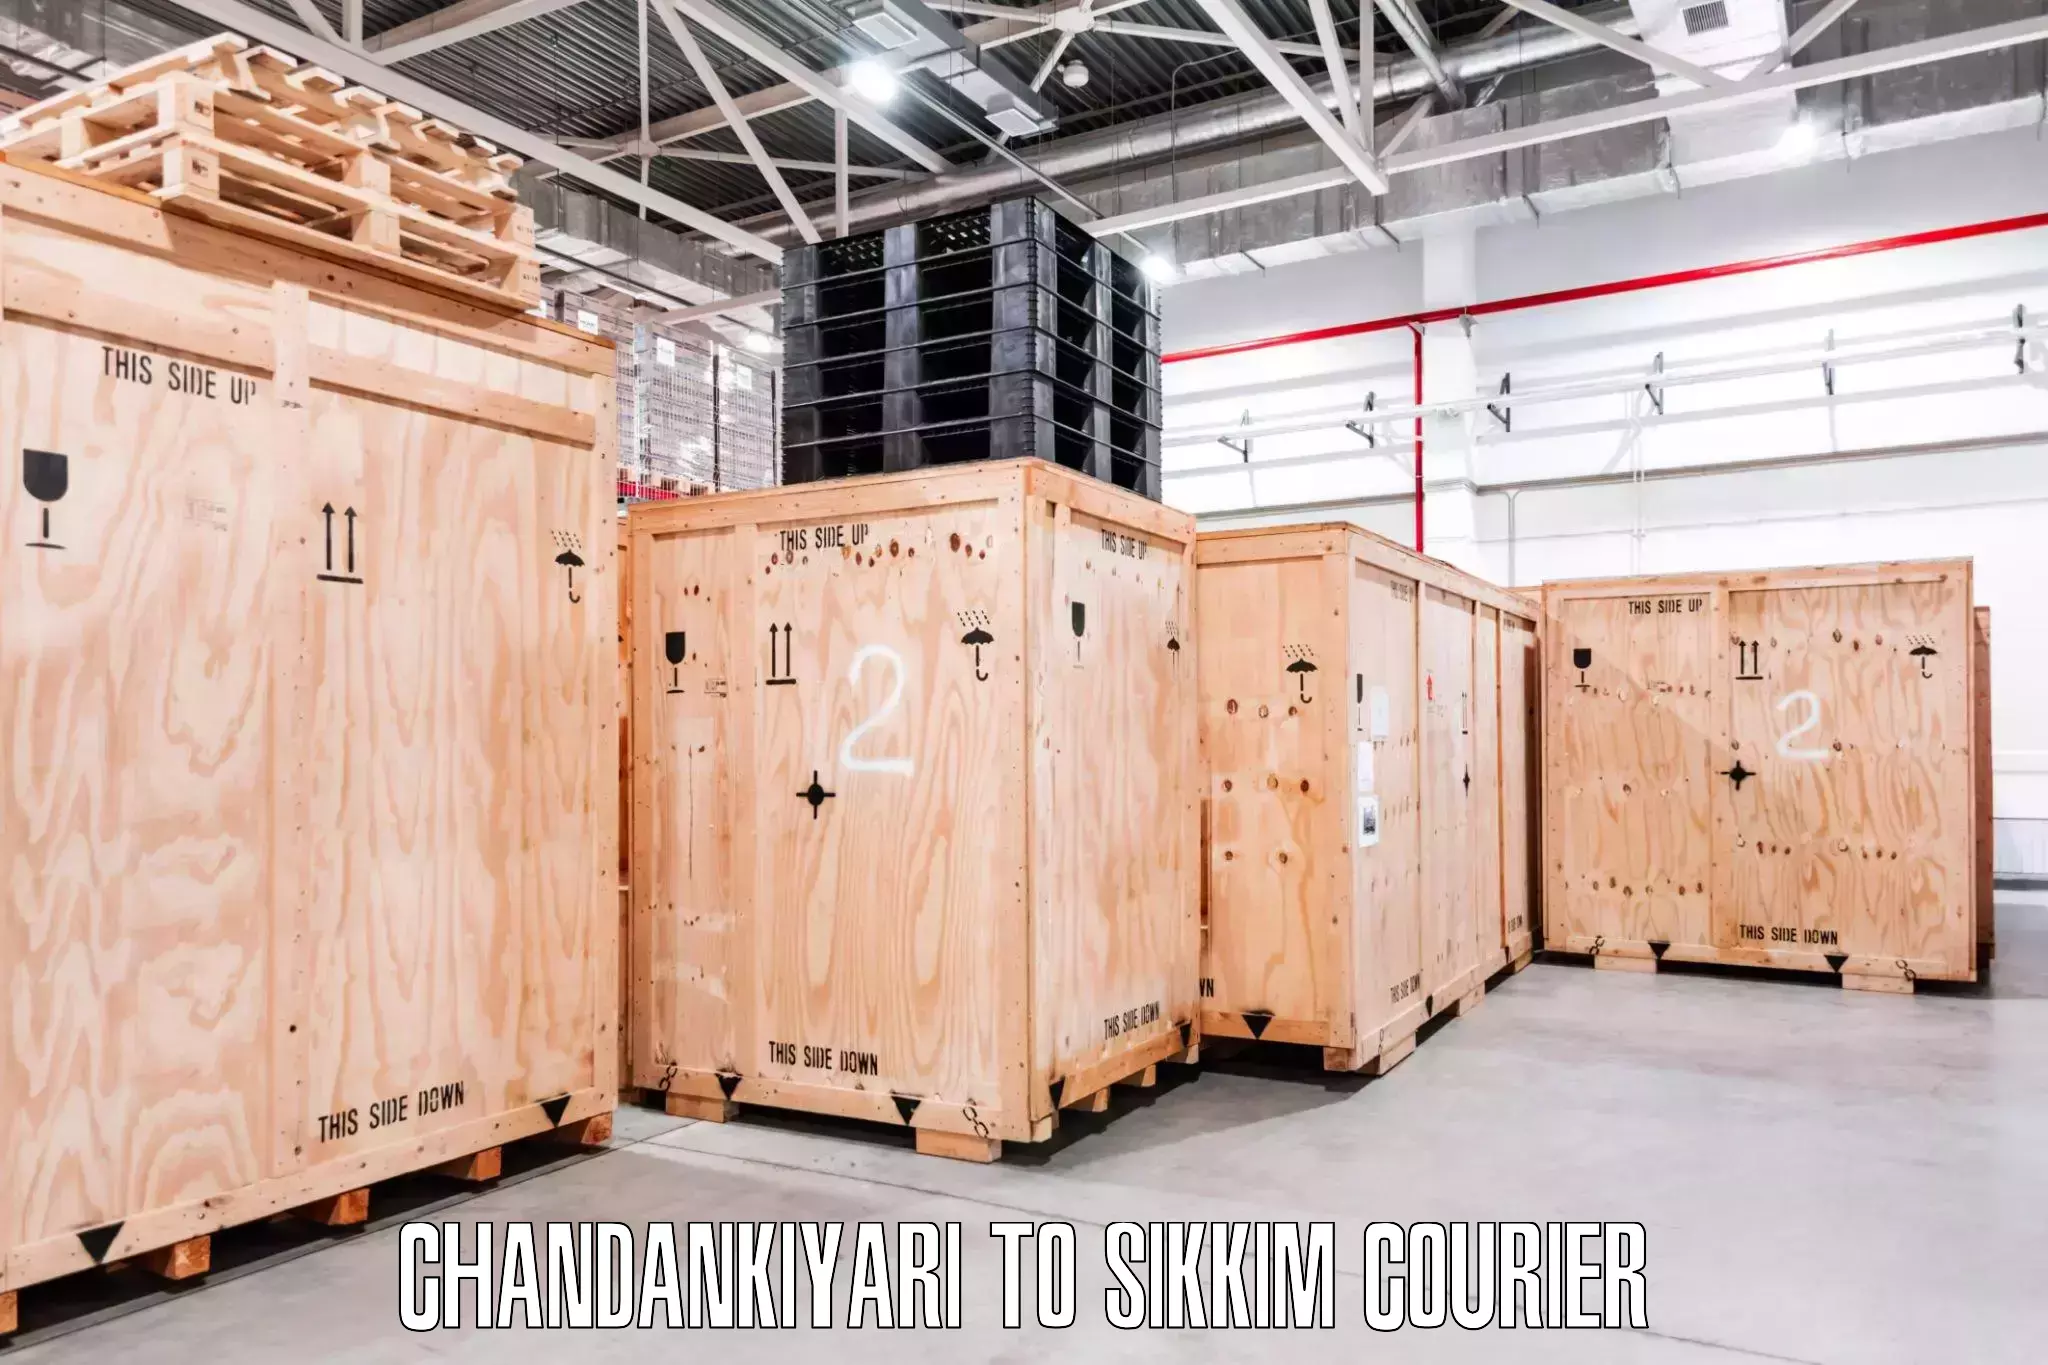 Skilled furniture transporters Chandankiyari to Sikkim